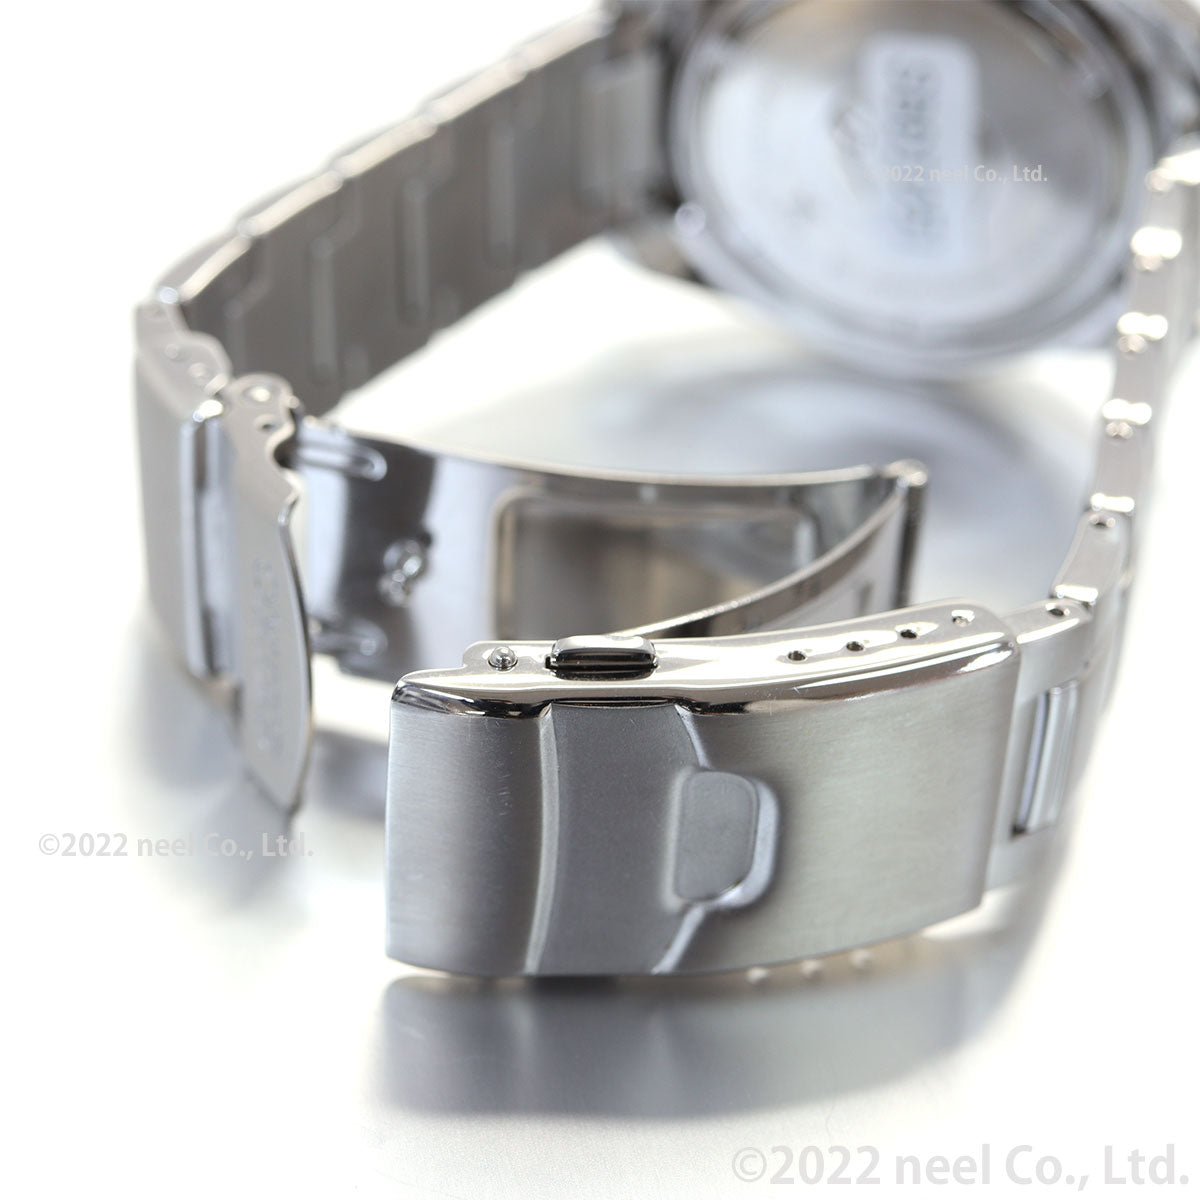 セイコー プロスペックス SEIKO PROSPEX ダイバースキューバ ソーラー 腕時計 メンズ SBDJ051